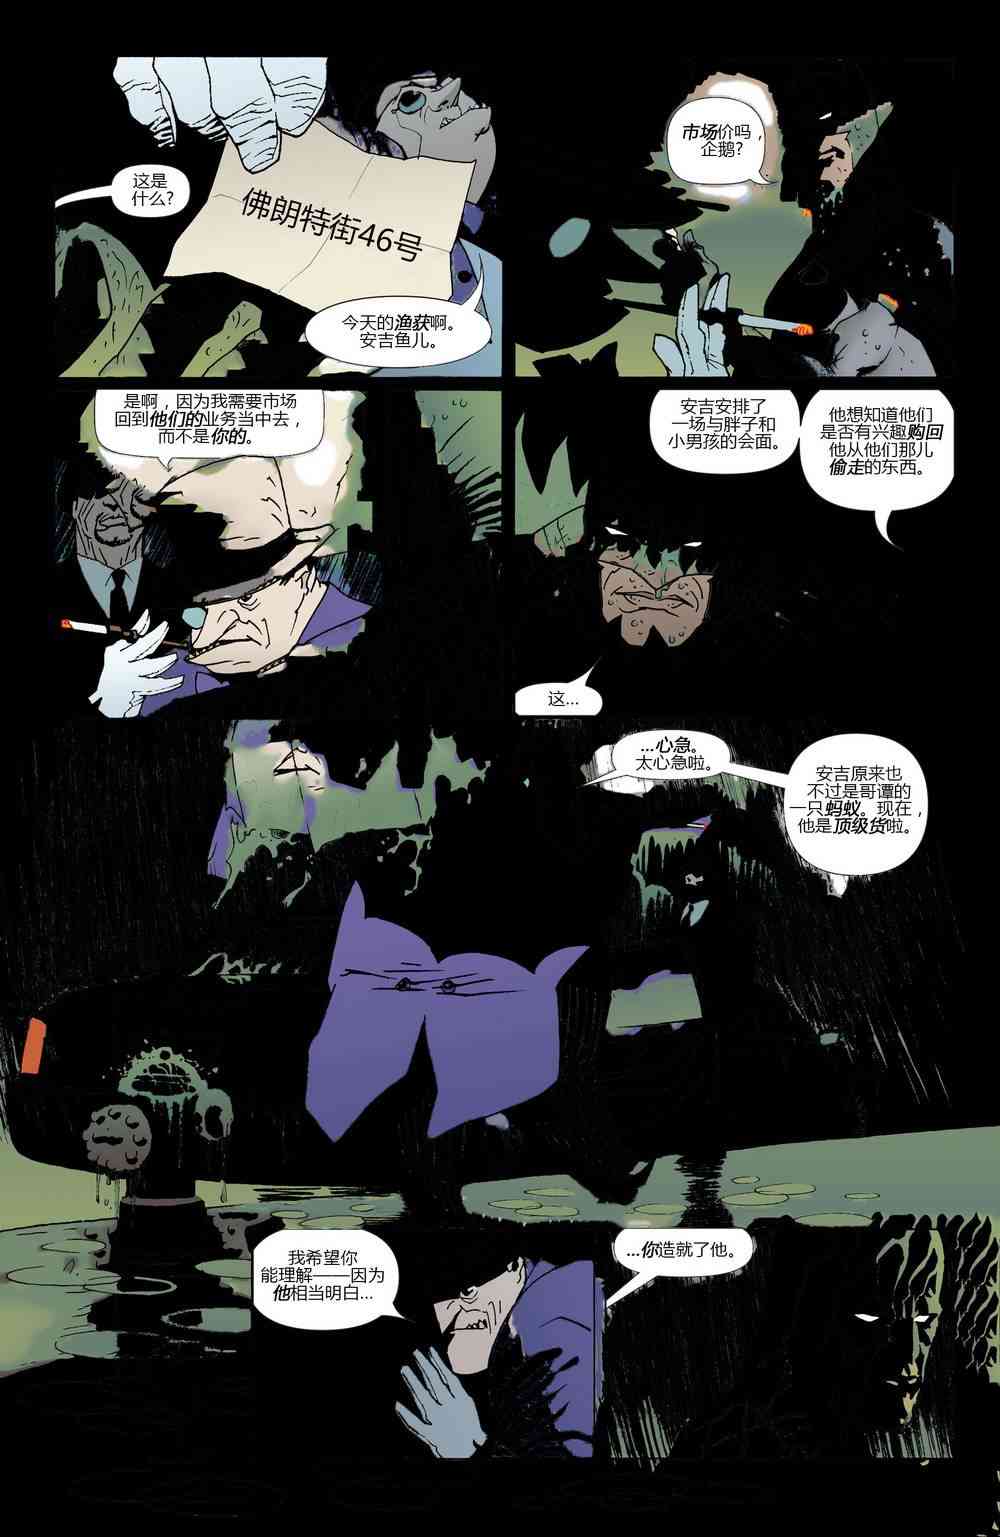 蝙蝠侠 - 第624卷破碎城市#5 - 3